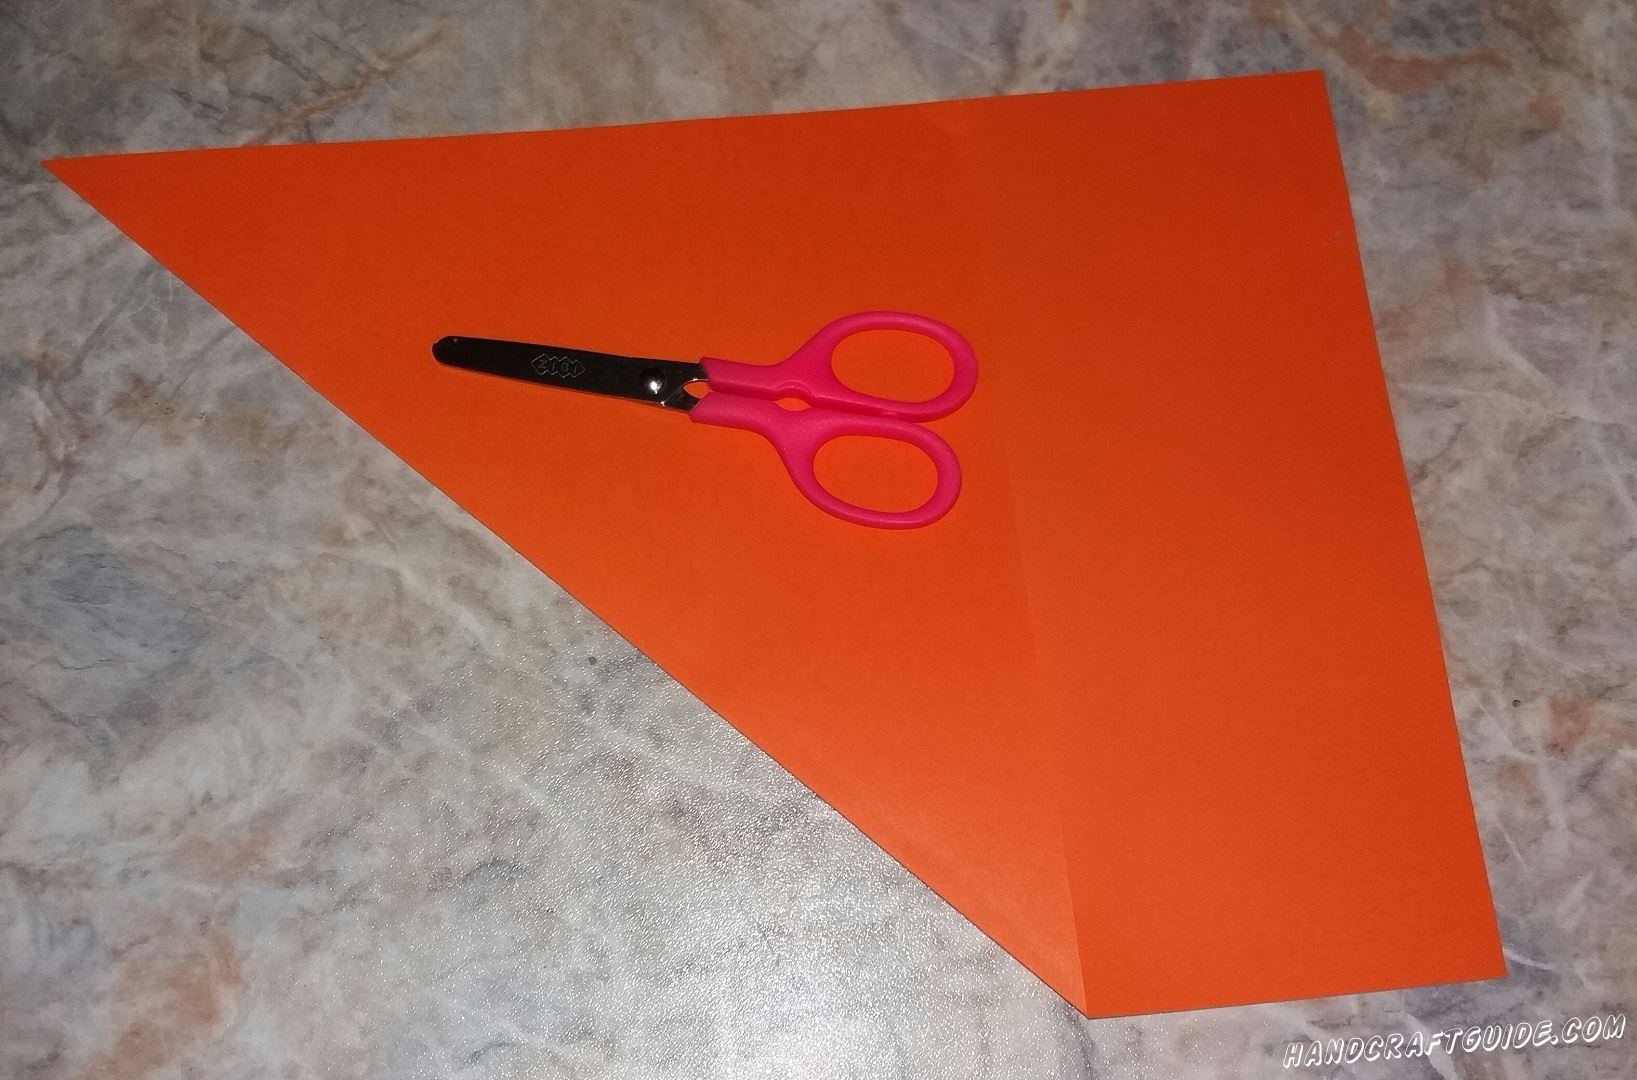 Начинаем мы с того что вырезаем ровный квадрат. Для этого берем оранжевый или красный лист бумаги и загибаем один угол. Всё что остается за треугольником мы обрезаем.